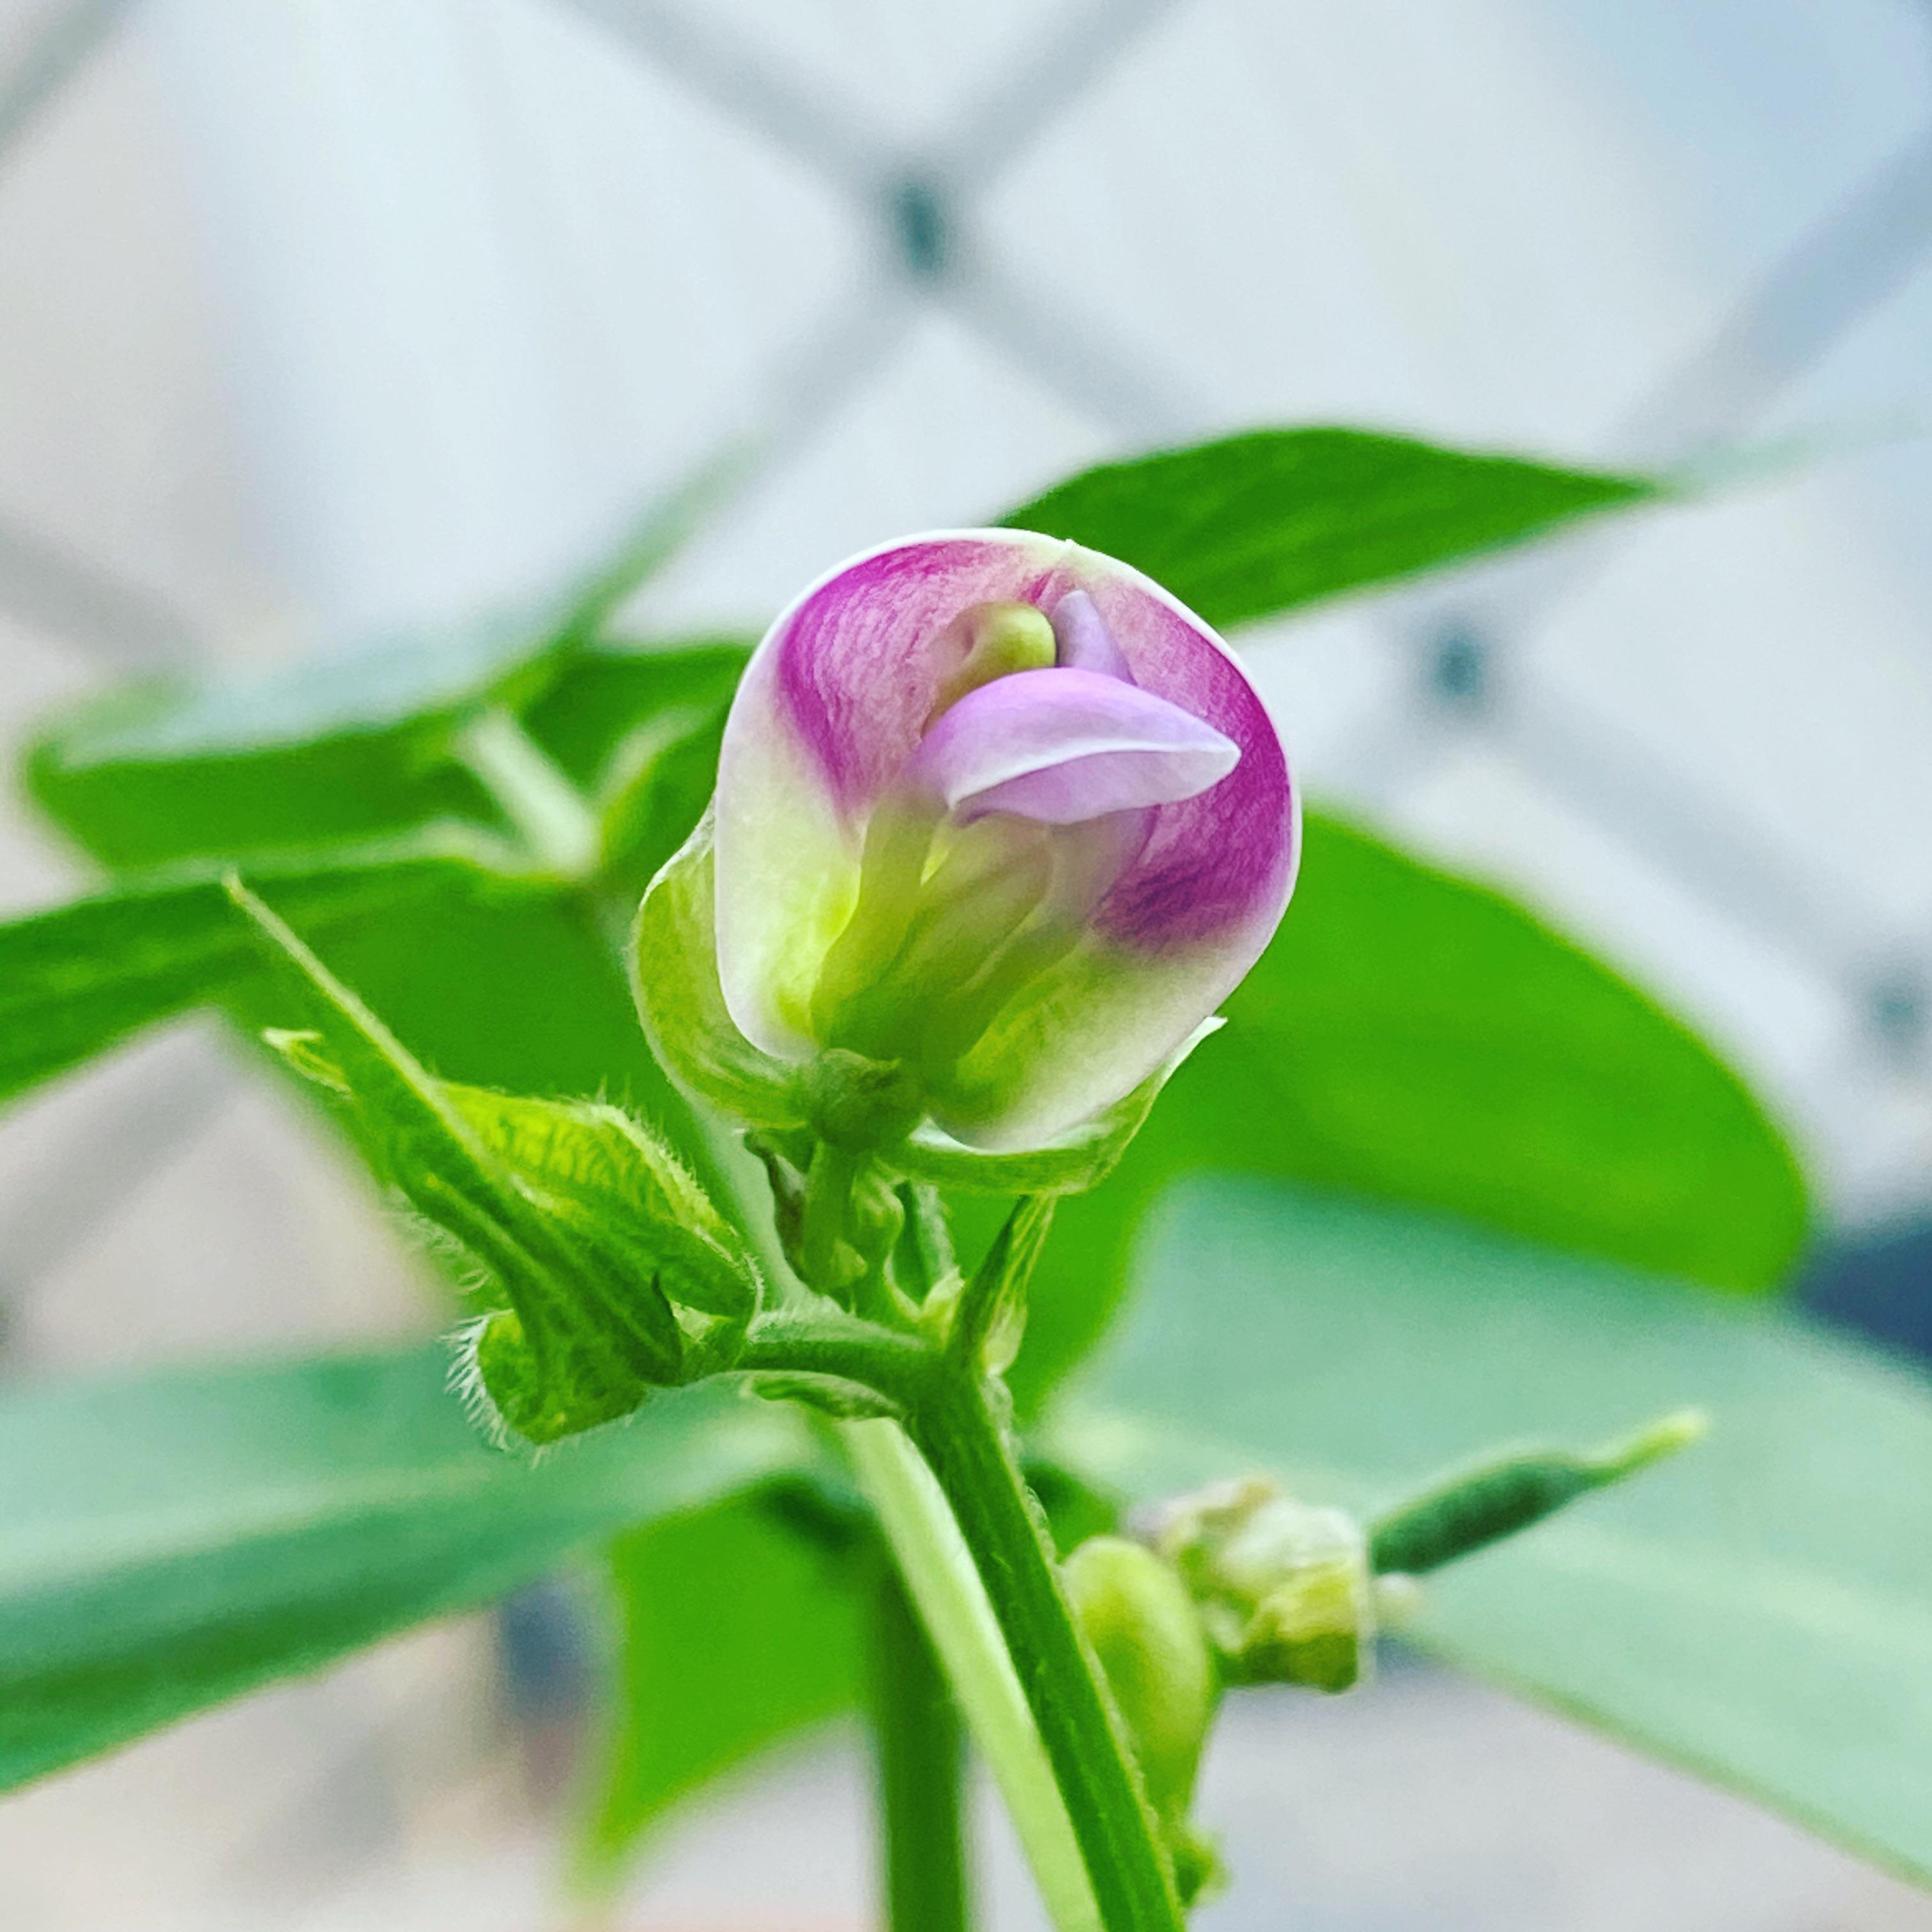 All For Gardening: Bean flower - All For Gardening